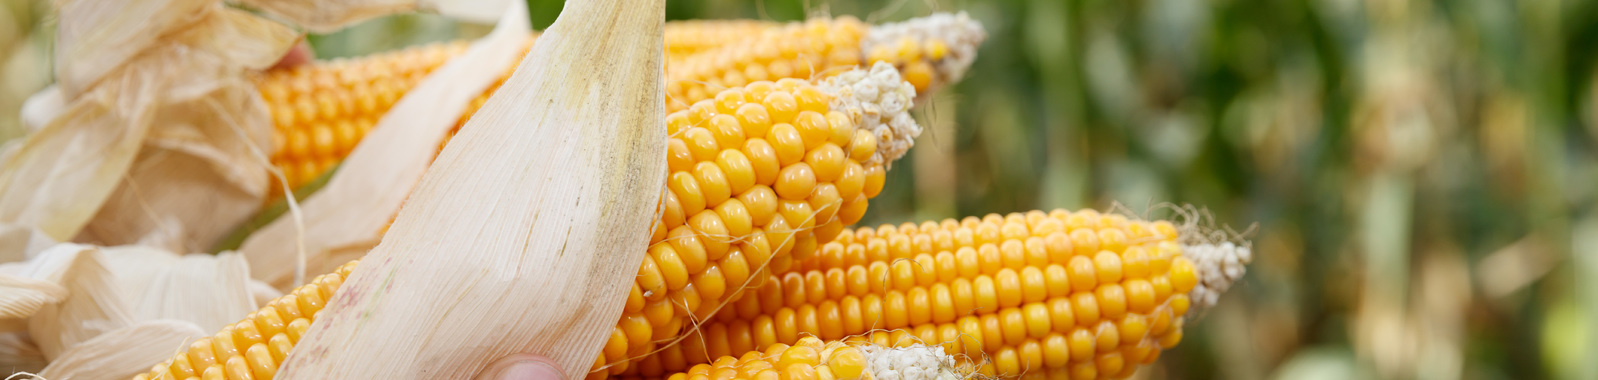 Wie Sie die Mais-Qualität verbessern